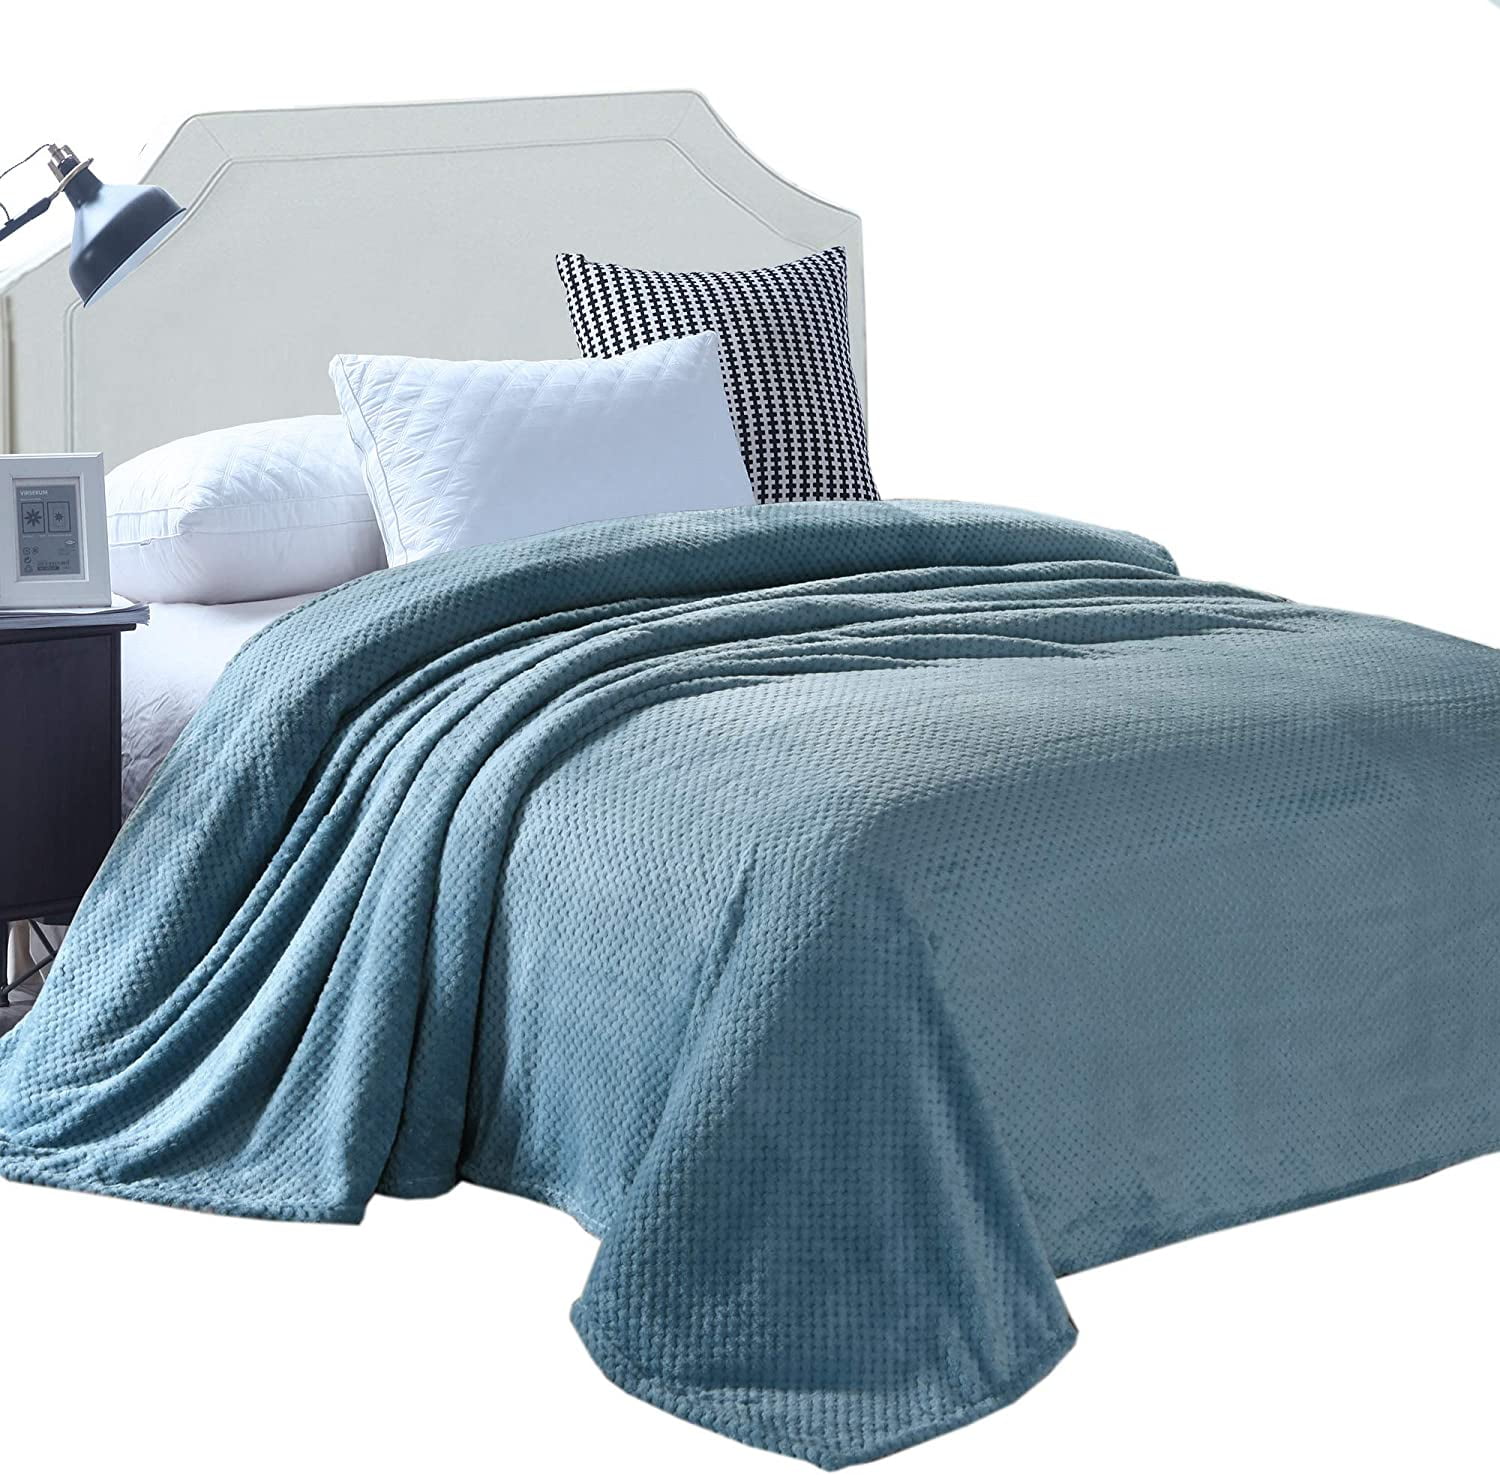 ご注意ください Exclusivo Mezcla Waffle Textured Soft Fleece Blanket,King Size Bed  Blanket 毛布、ブランケット